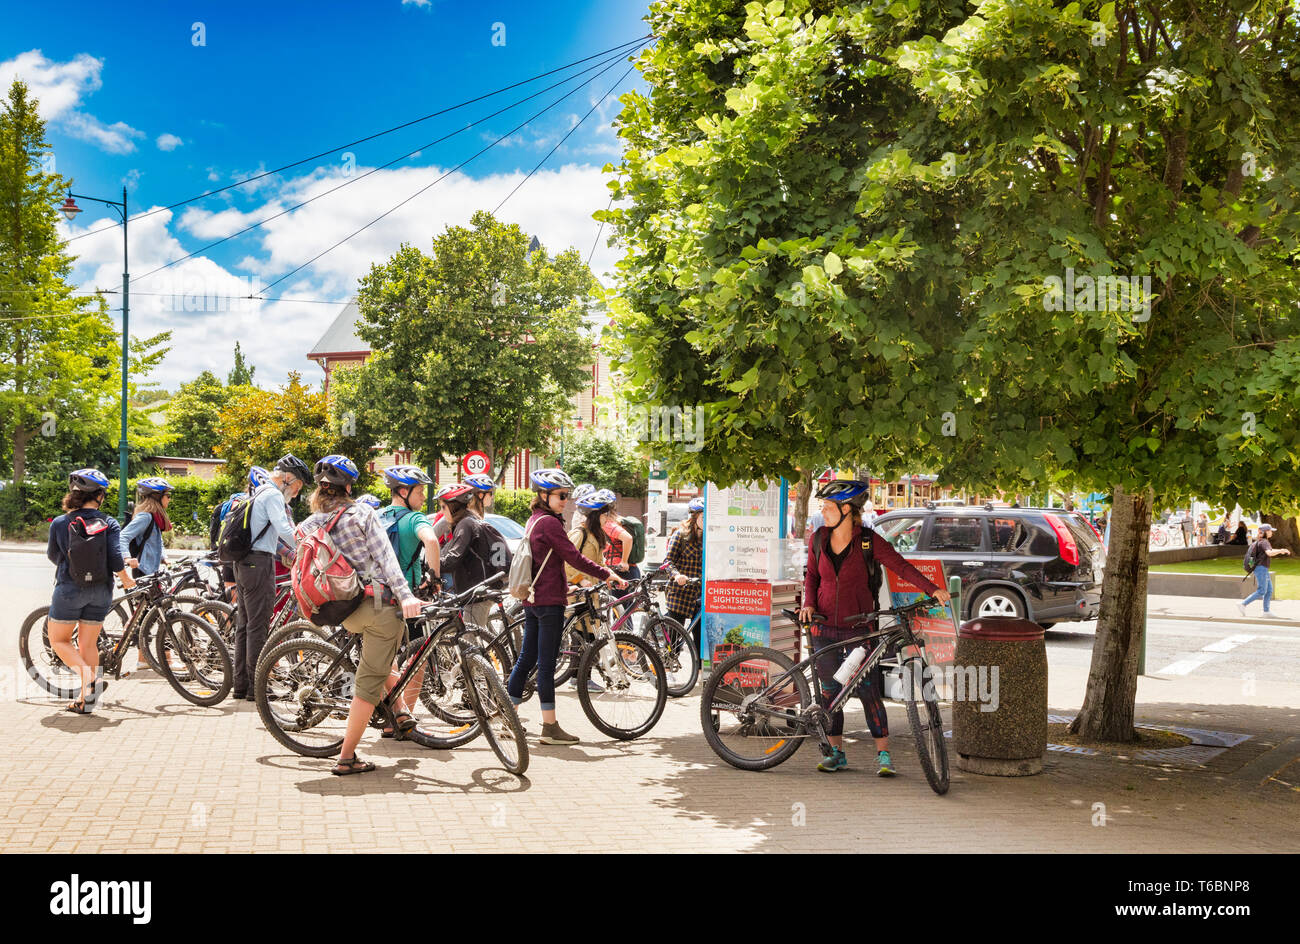 Vom 8. Januar 2019: Christchurch, Neuseeland - Gruppe von Fahrrad Touristen versammeln sich an einem schönen Sommertag in Christchurch, Neuseeland. Stockfoto